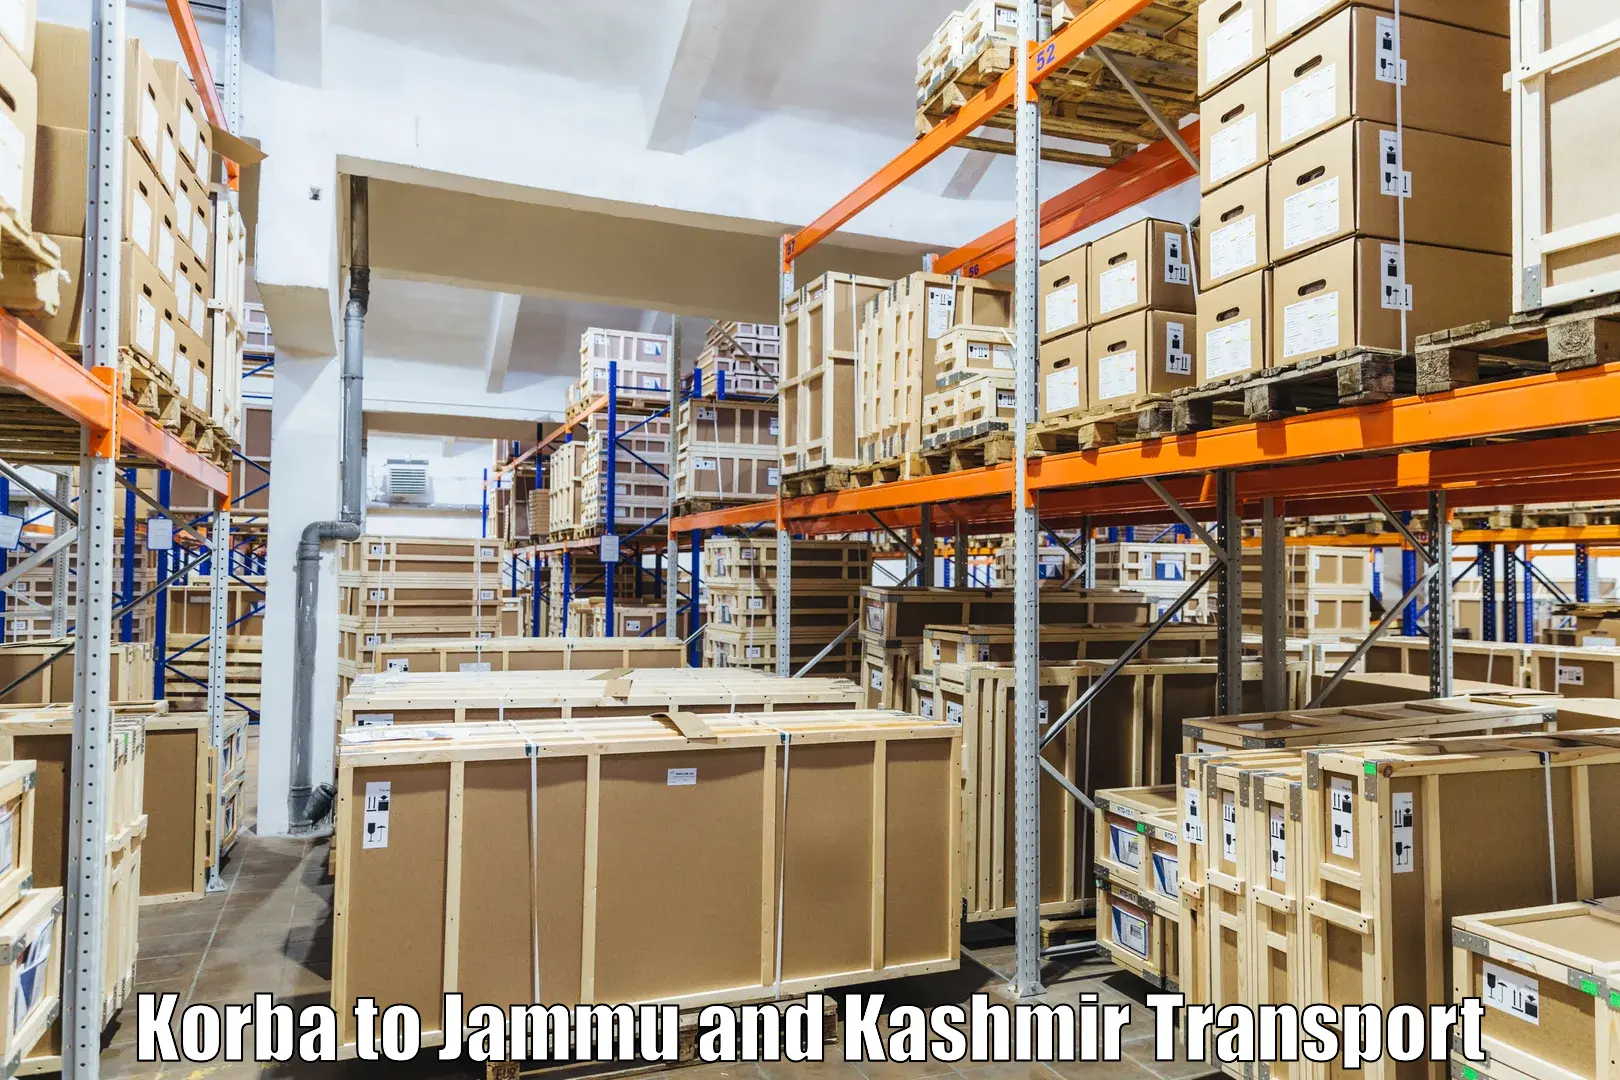 Online transport Korba to Srinagar Kashmir